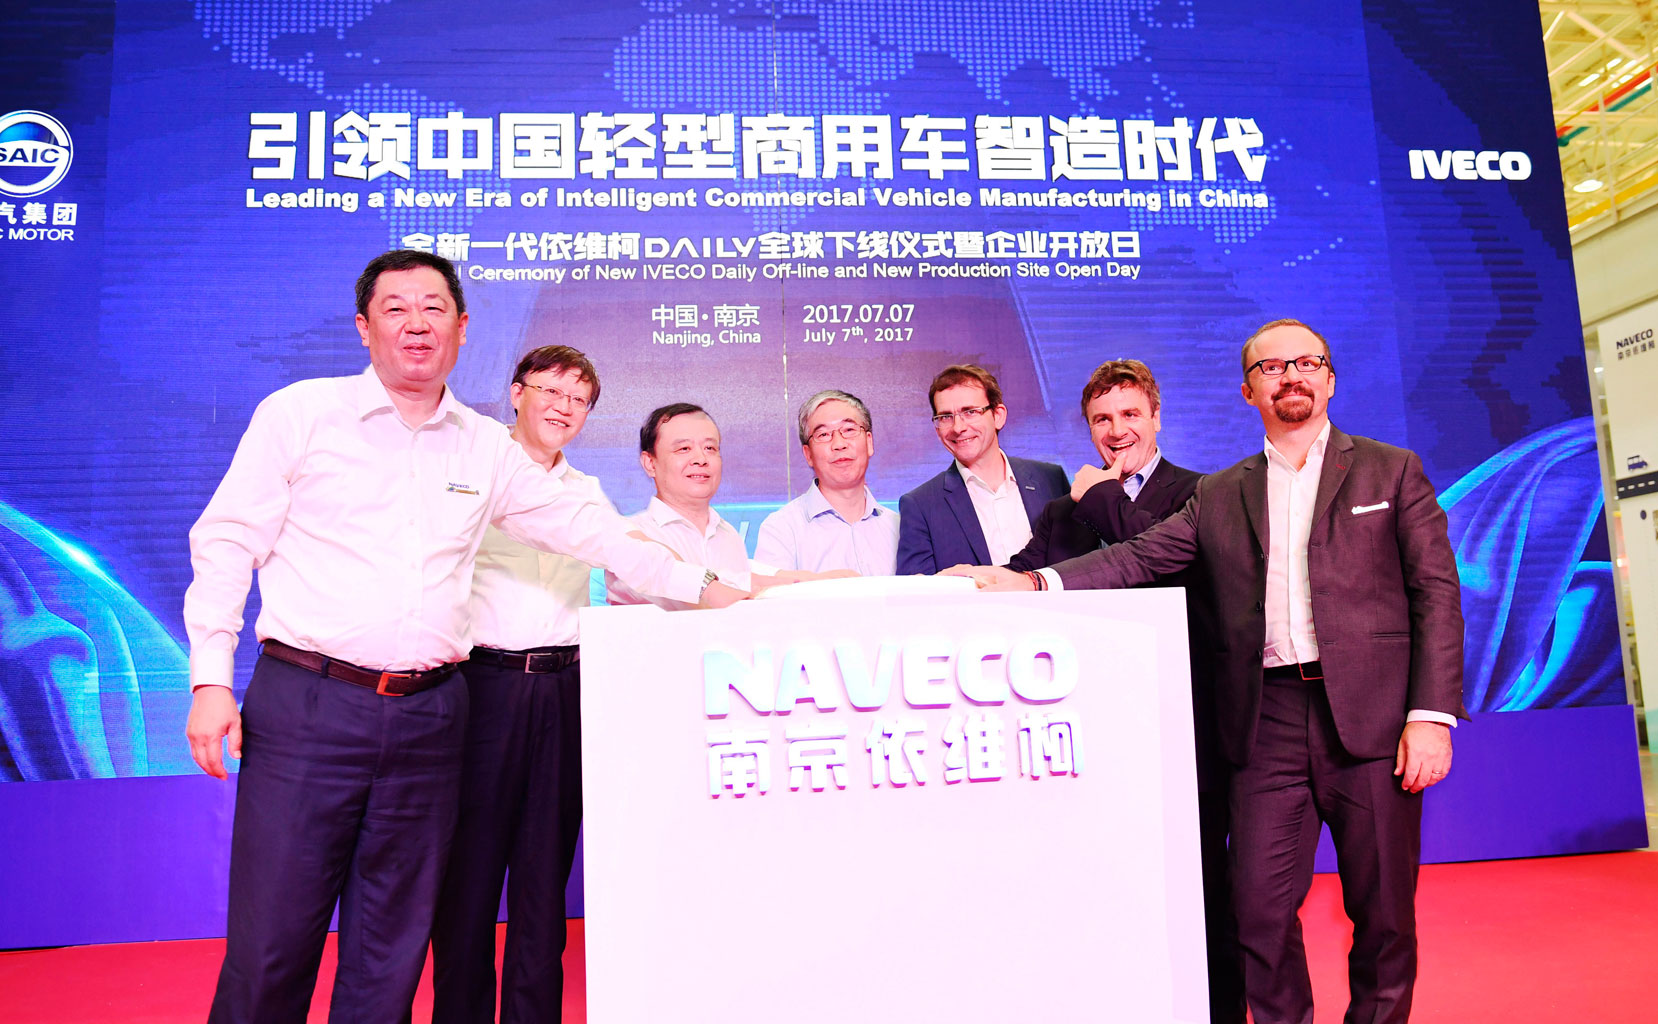 Nueva planta de Iveco en China